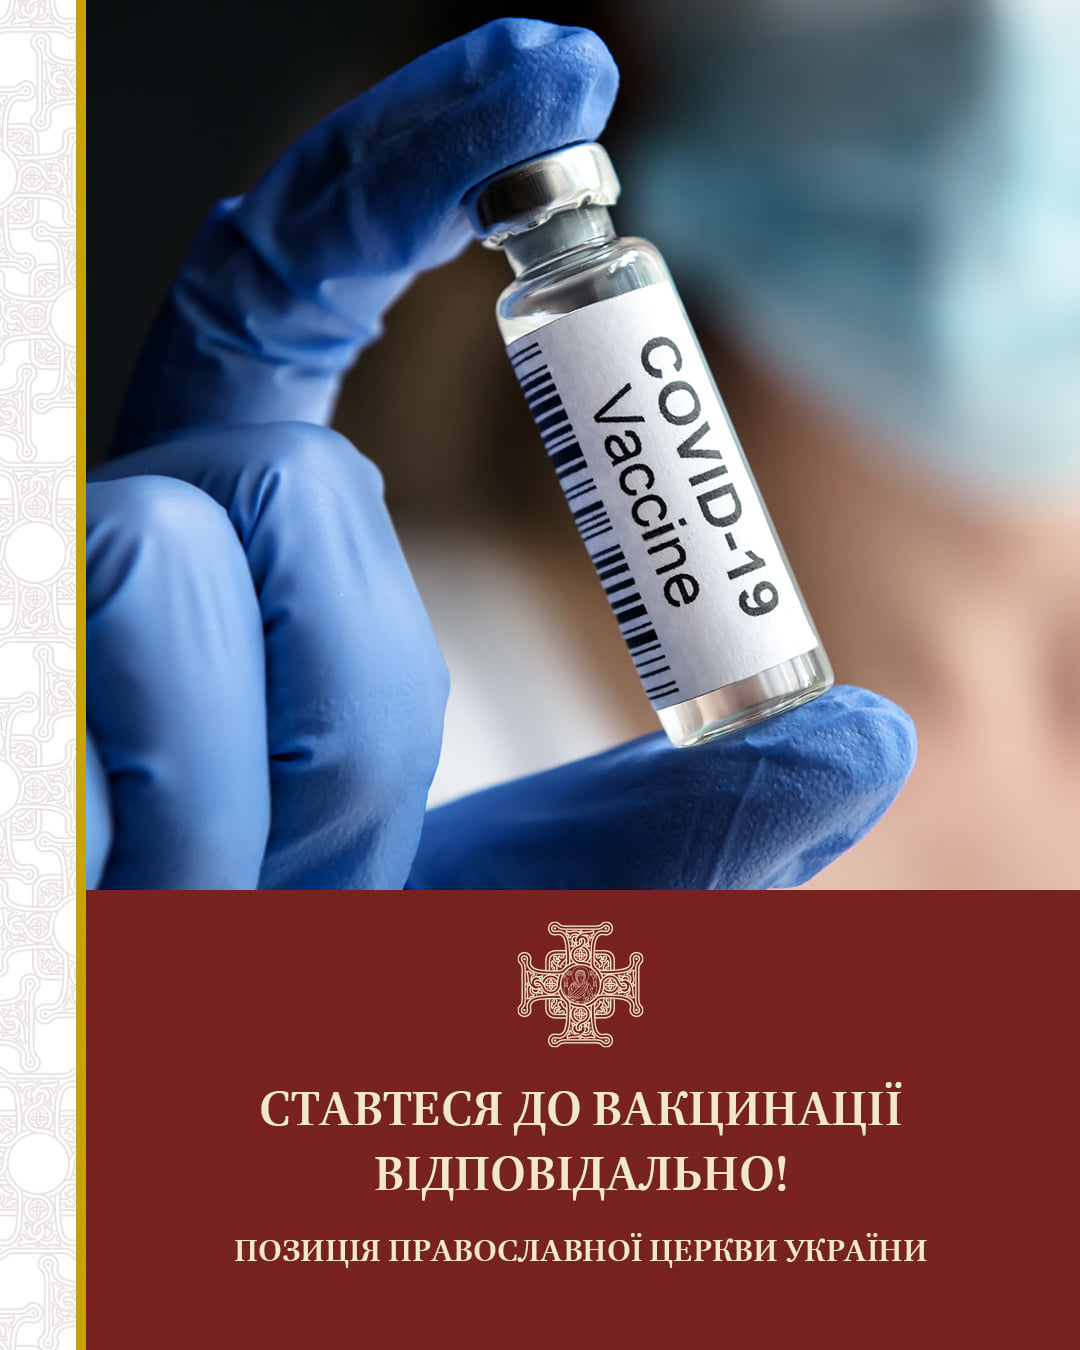 Что говорит Православная церковь Украины о вакцинации. Ответ удивит